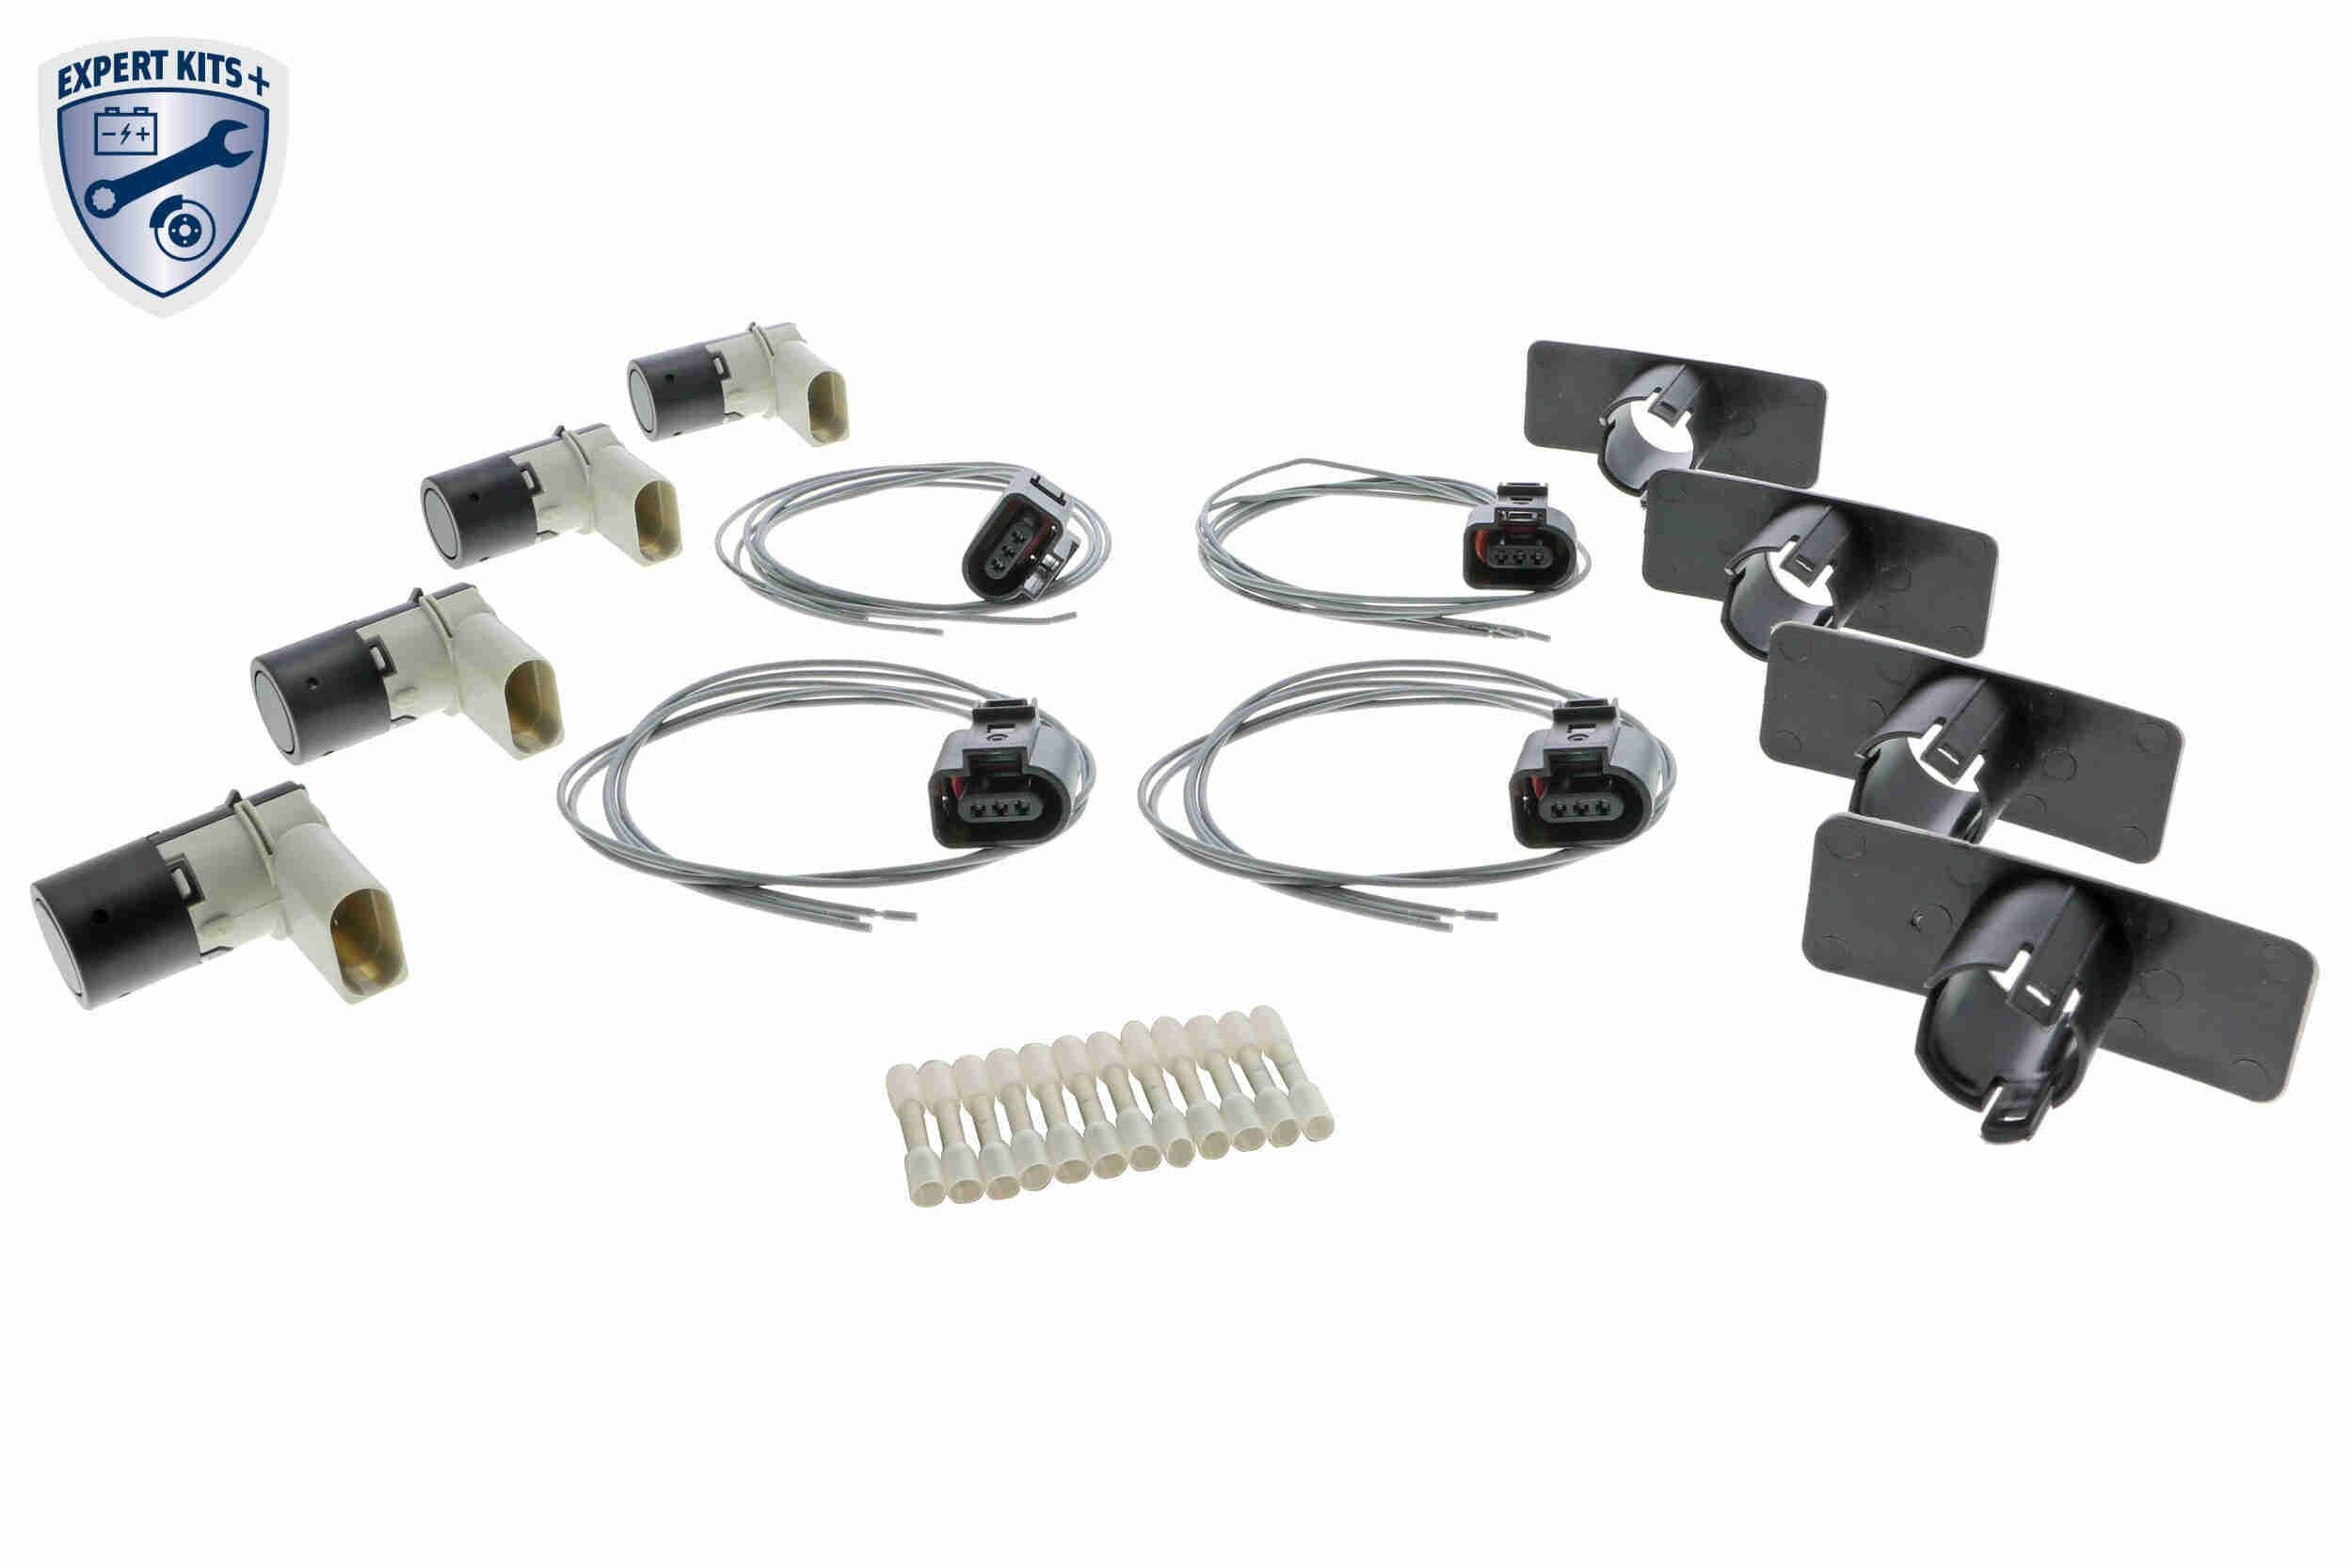 VEMO Rear, Front, black, Ultrasonic Sensor Reversing sensors V10-72-40808 buy